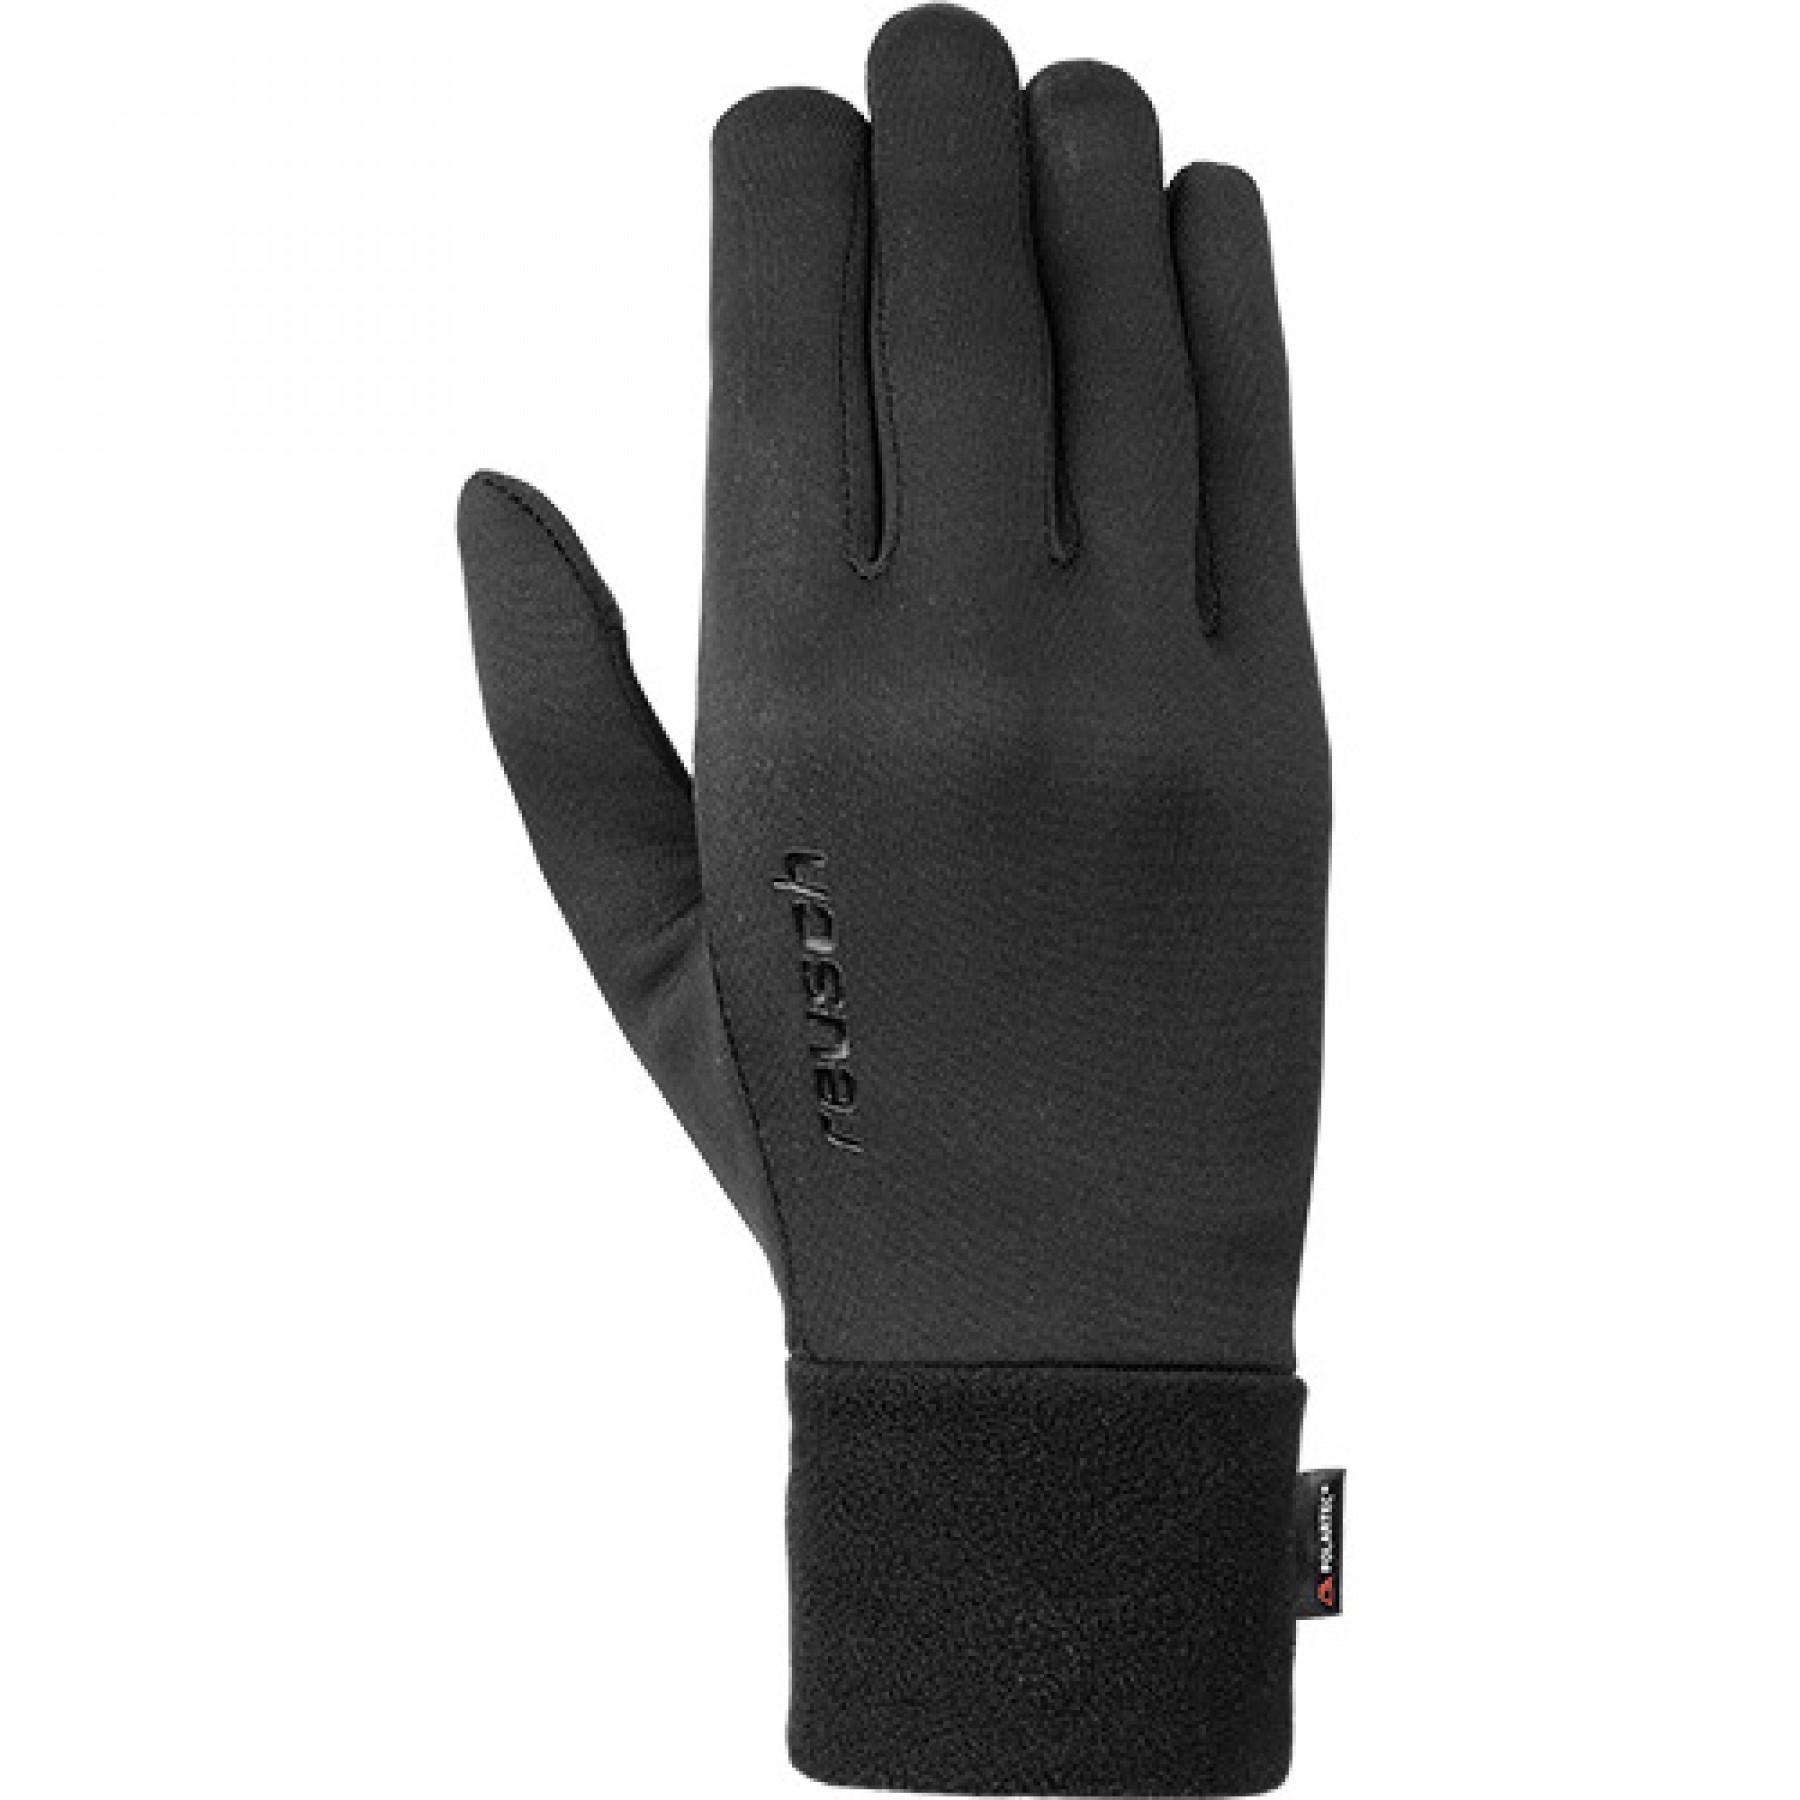 Gloves Reusch Power Stretch® Touch-tec